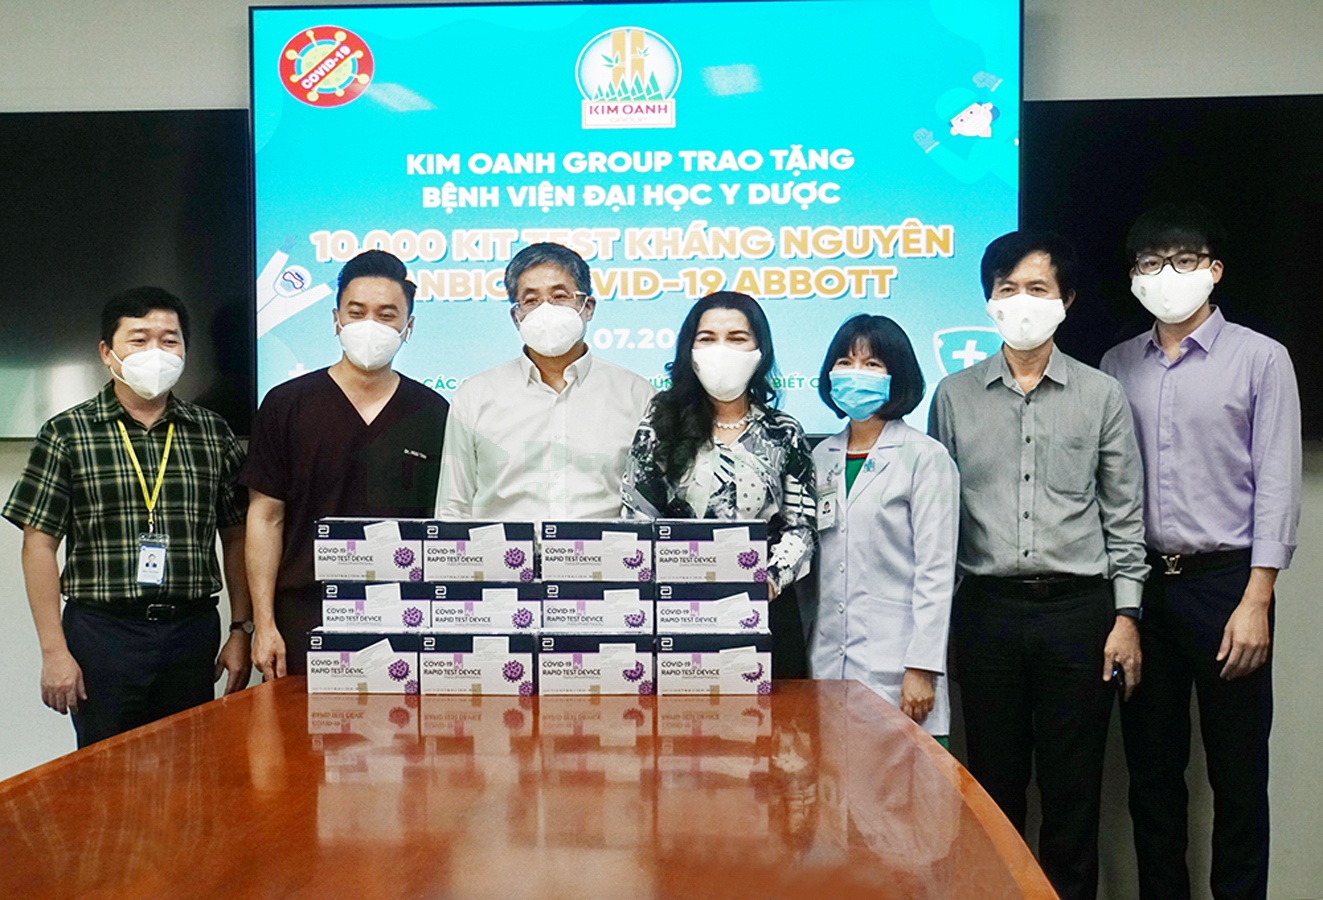 Kim Oanh Group Hỗ Trợ Bệnh Viện Đại Học Y Dược